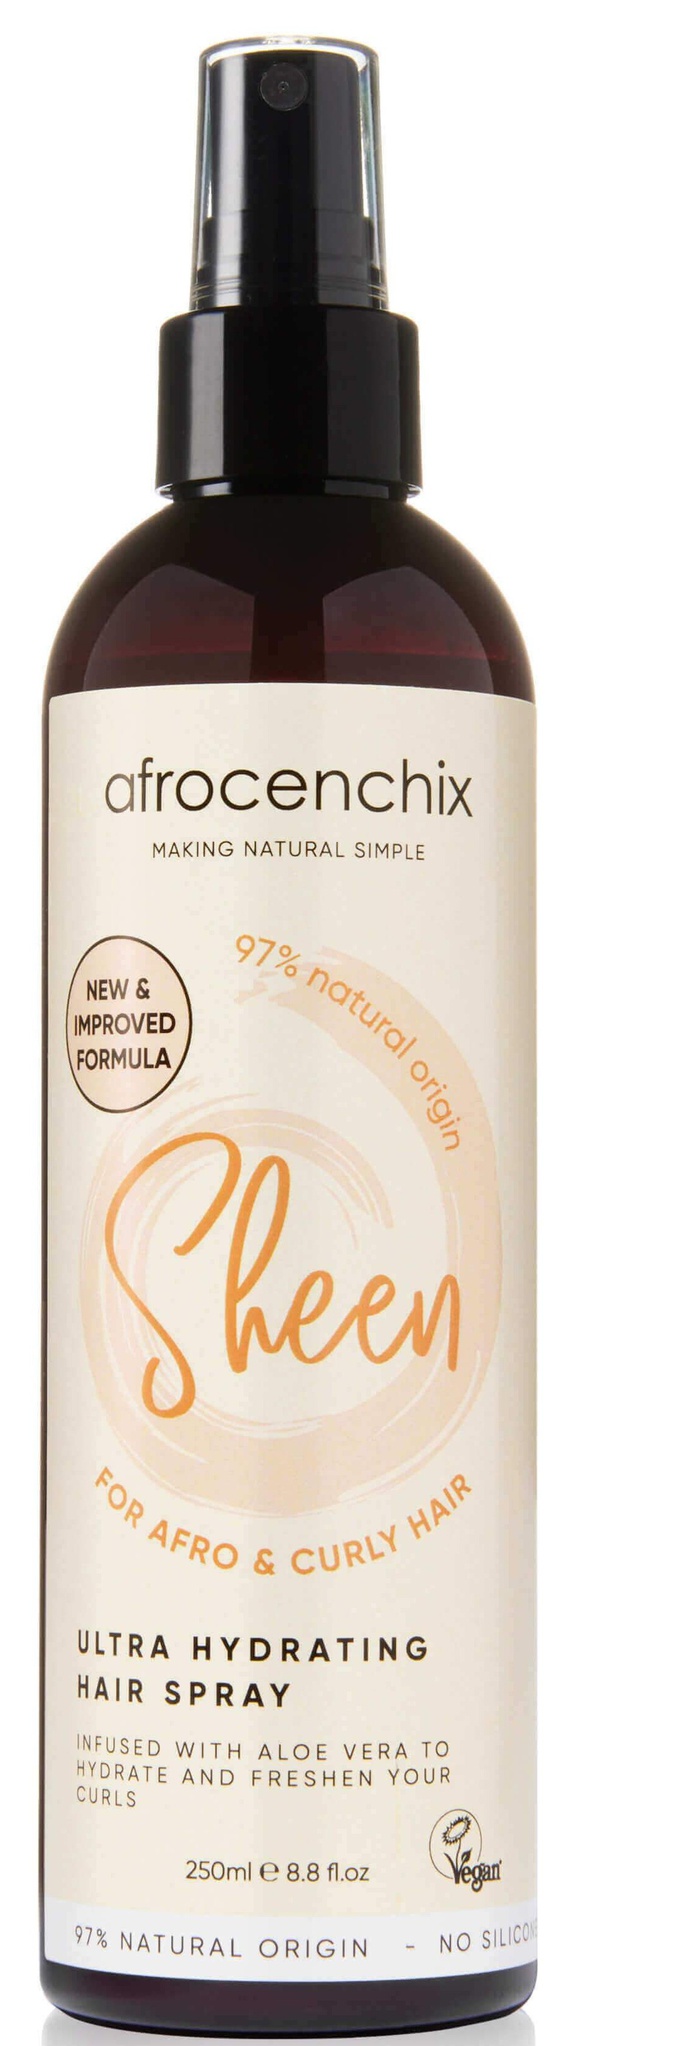 Afrocenchix Sheen